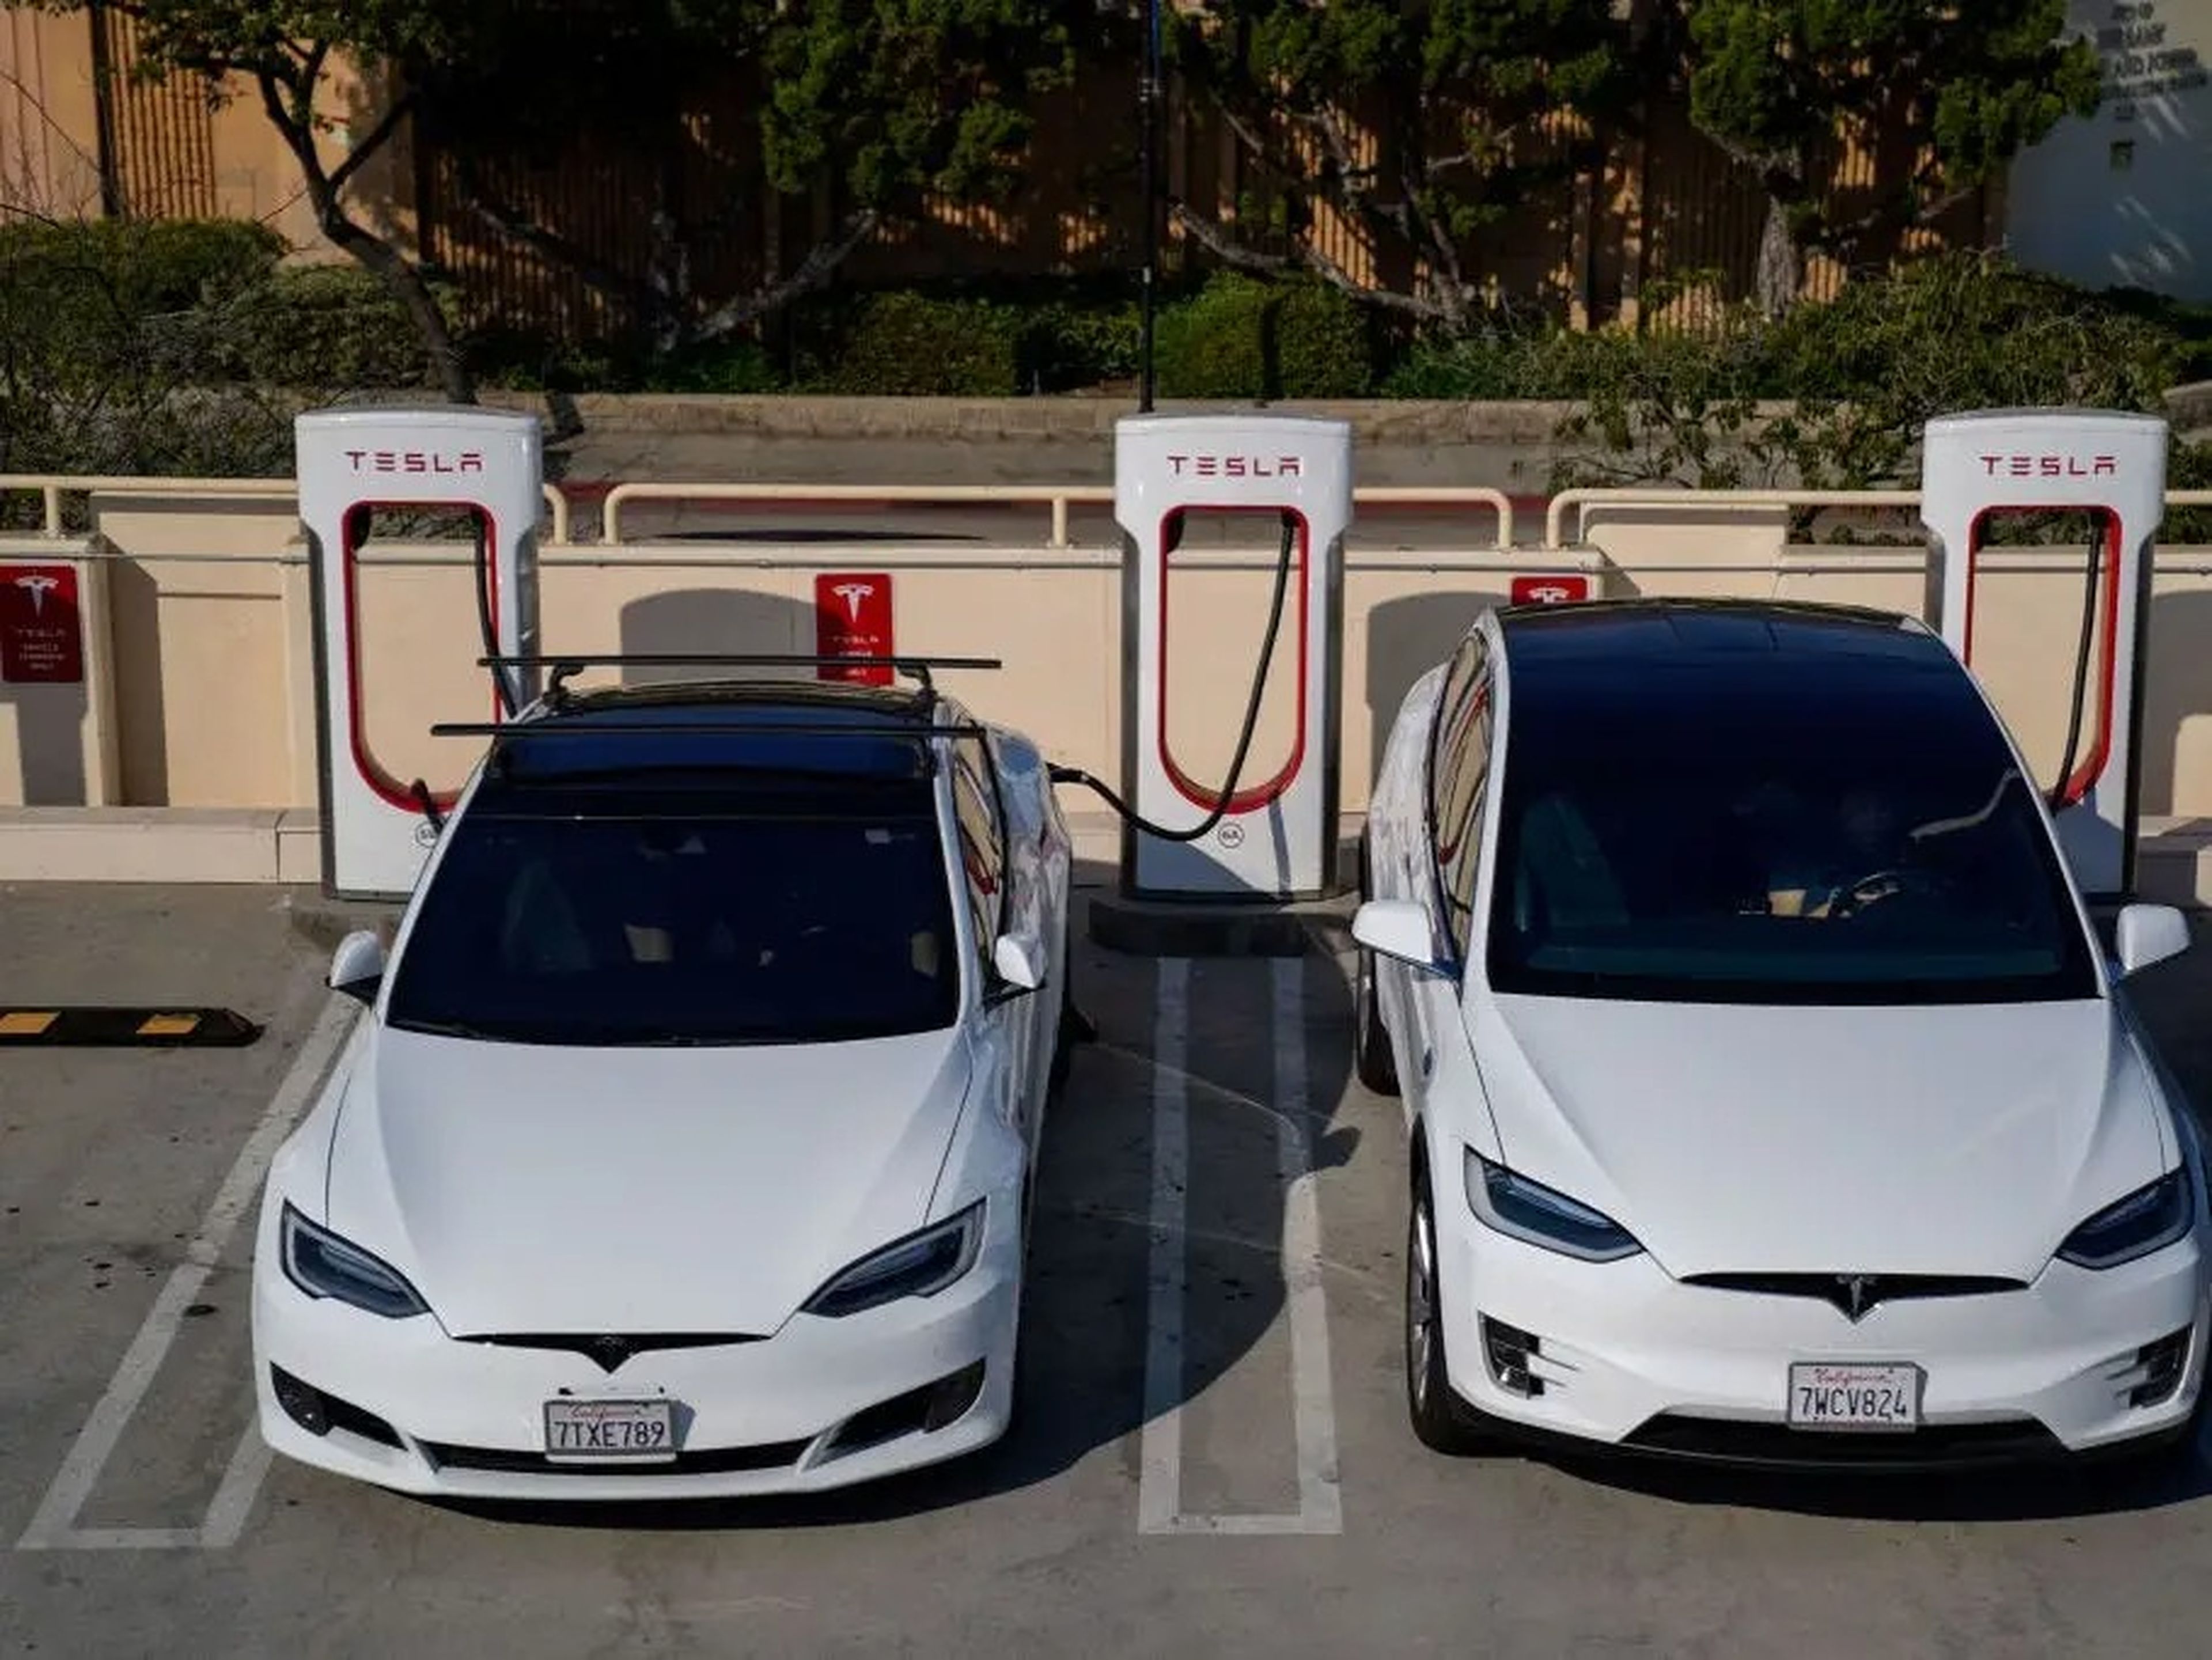 2 vehículos Tesla en una estación de Supercargadores.